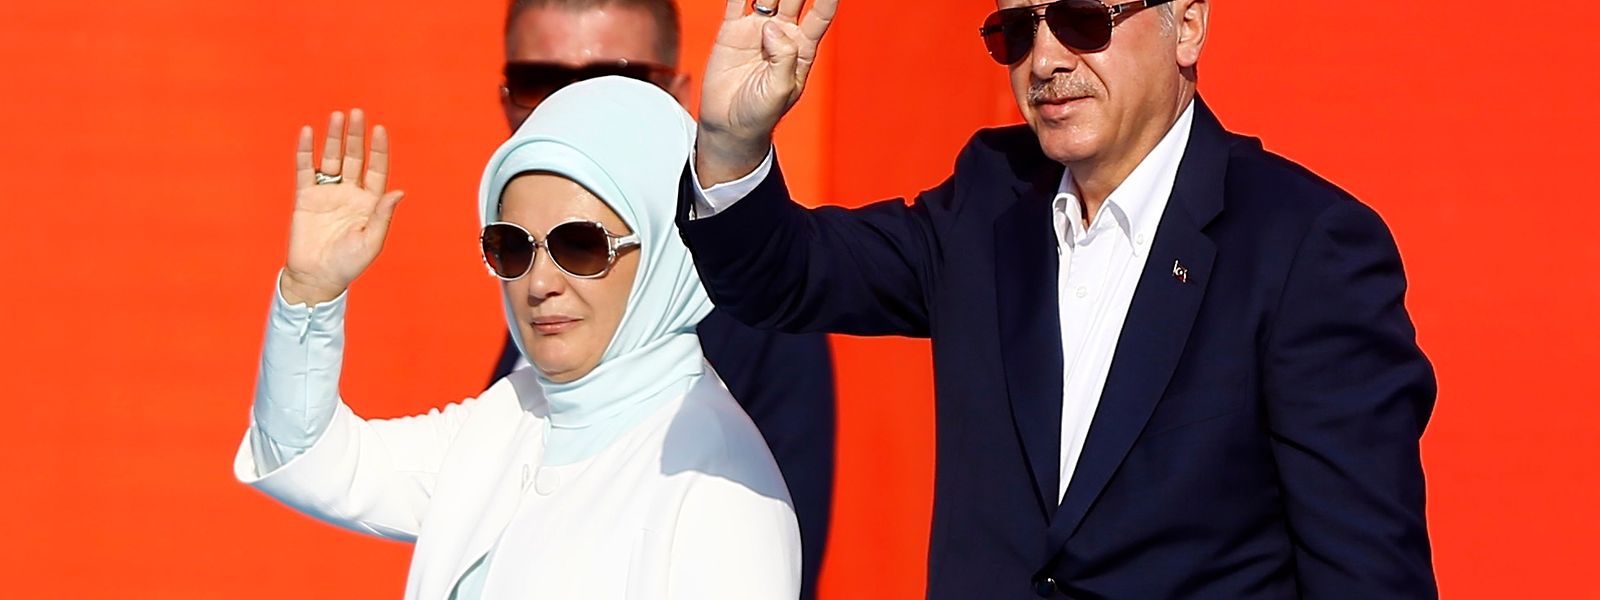 Der türksiche Präsident Tayyip Erdogan und seine Ehefrau, Emine Gulbaran, bei der Kundgebung.